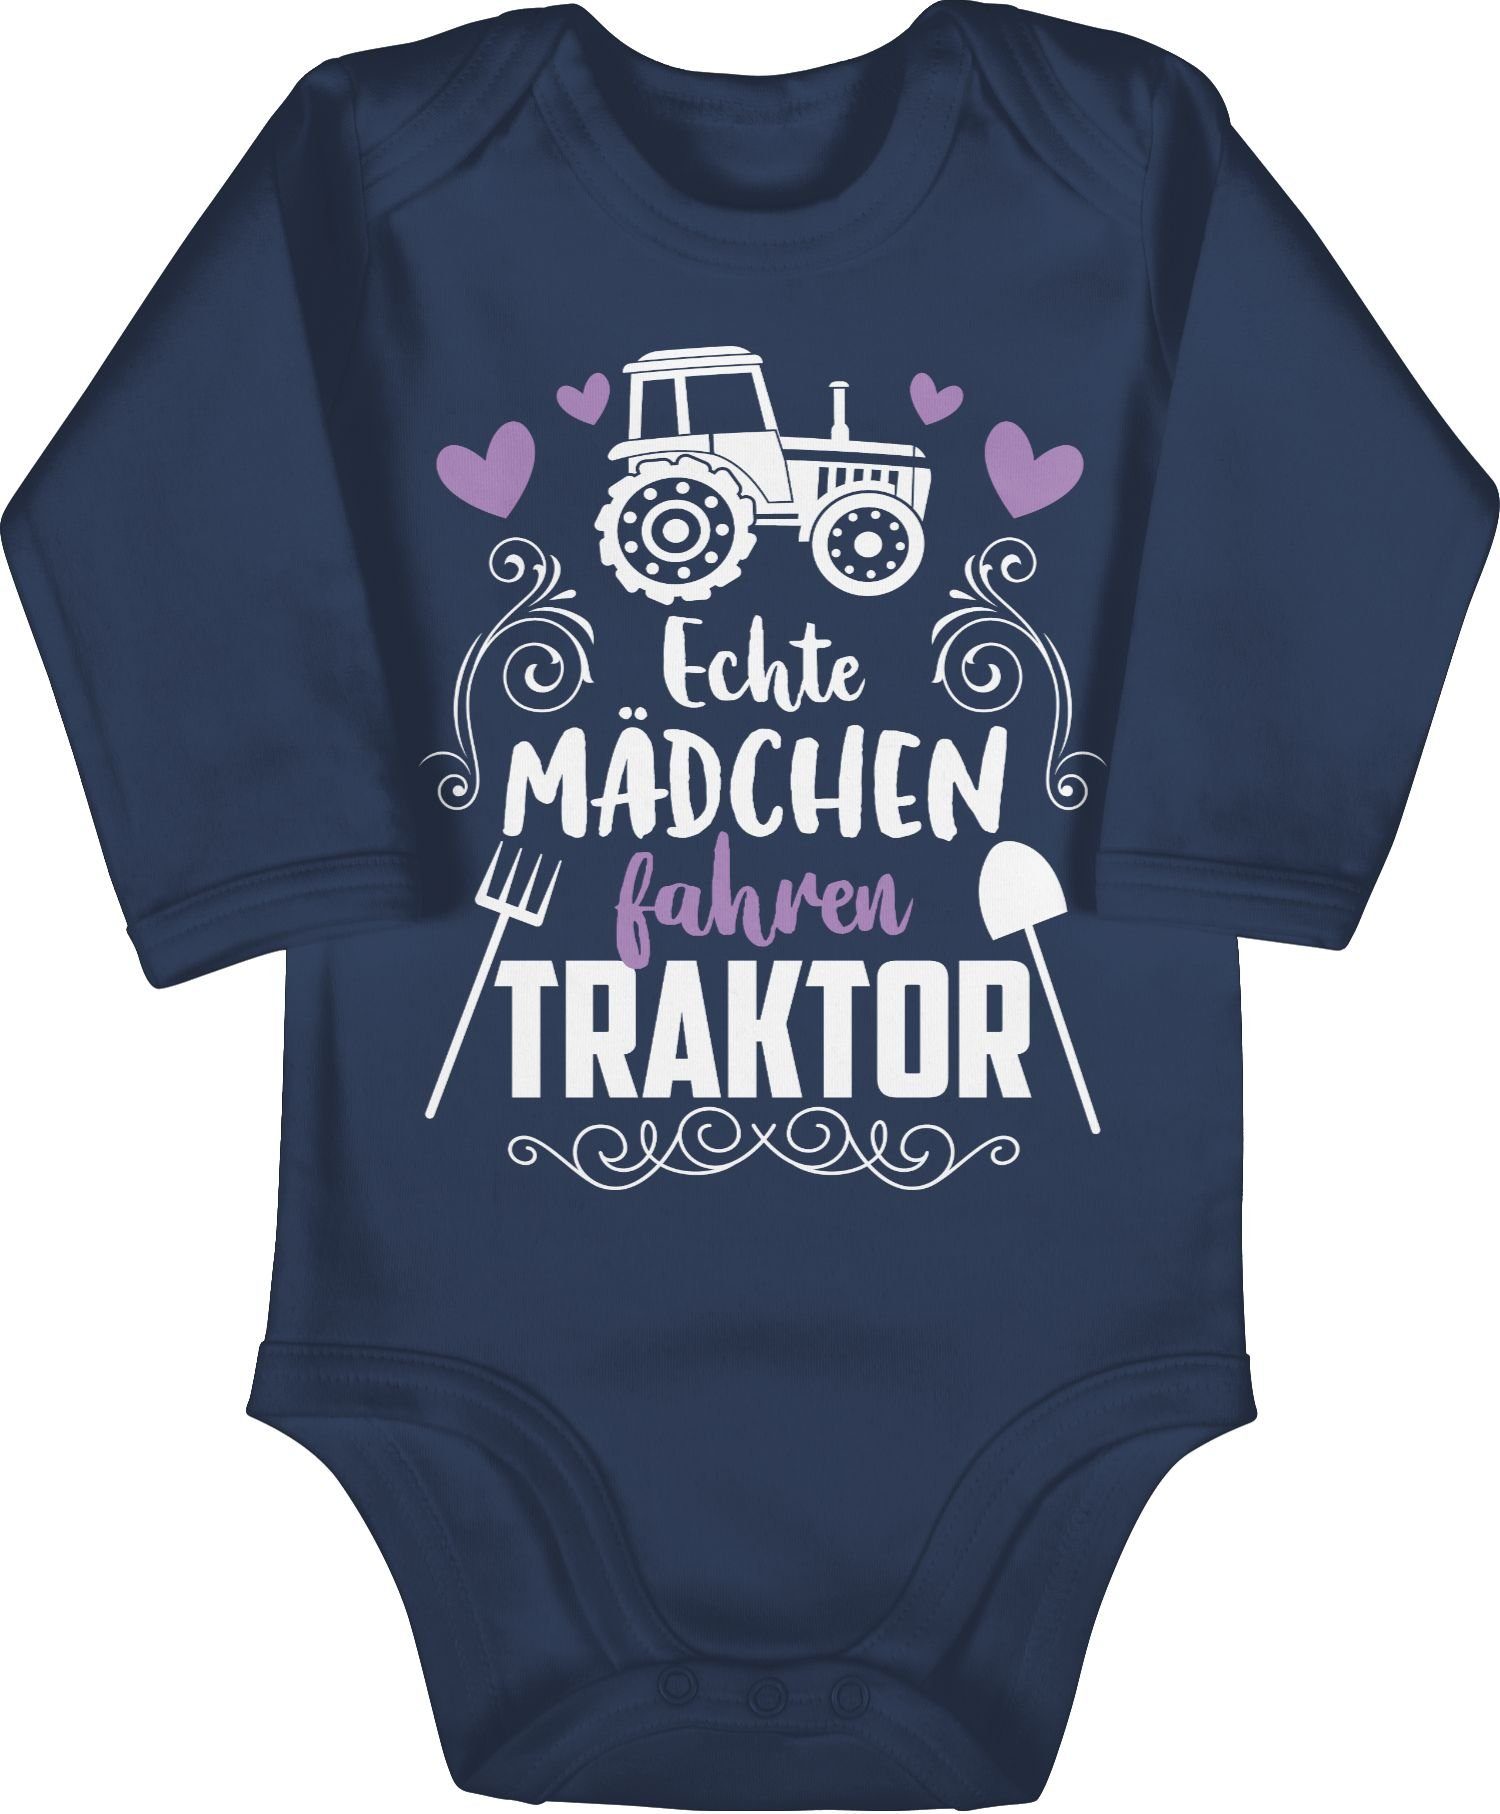 Baby Blau Navy Traktor Bagger 1 Mädchen weiß Co. Echte und Shirtbody Shirtracer Traktor - fahren